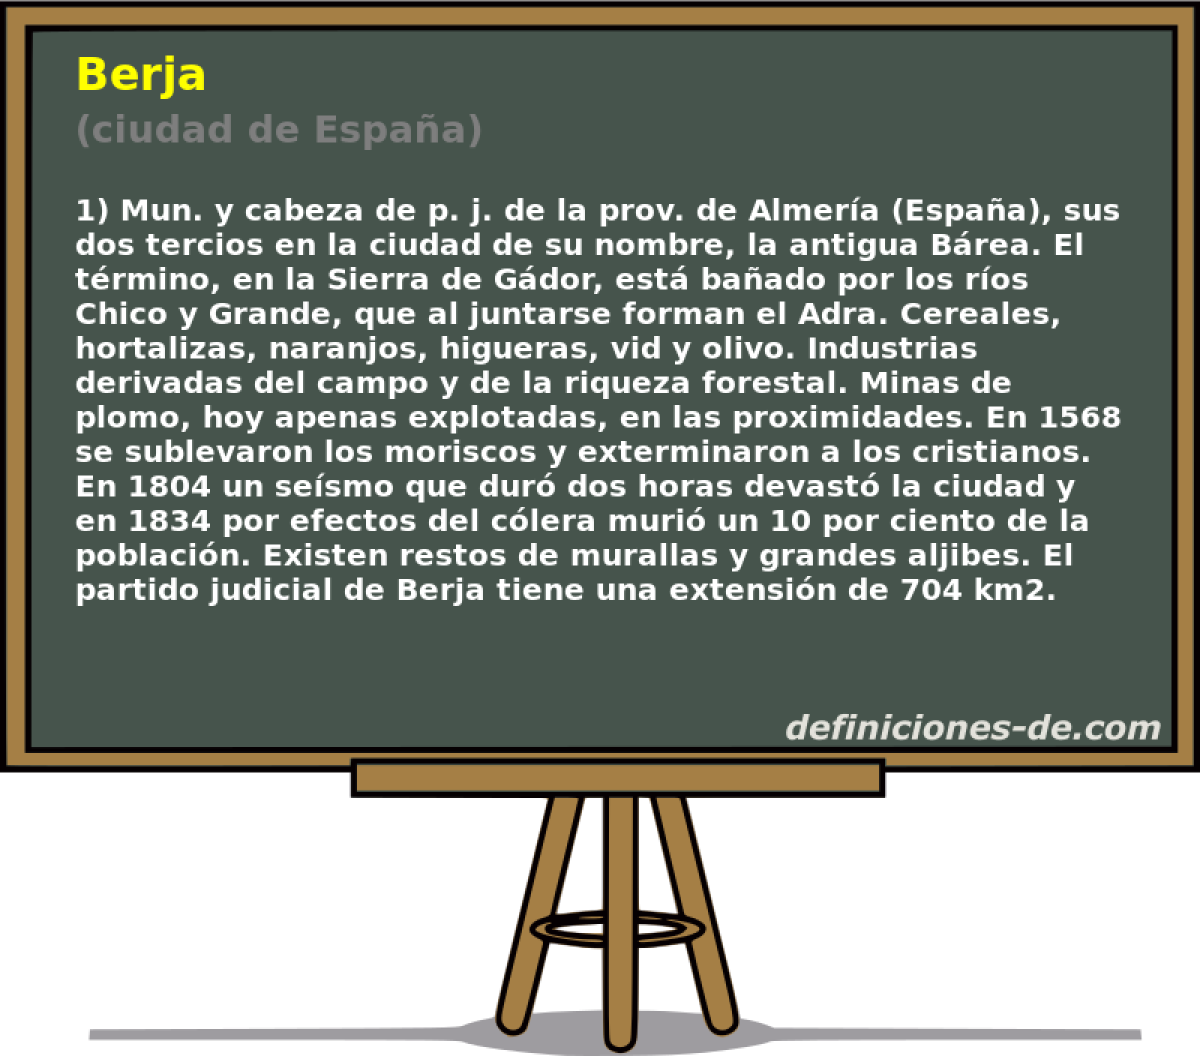 Berja (ciudad de Espaa)